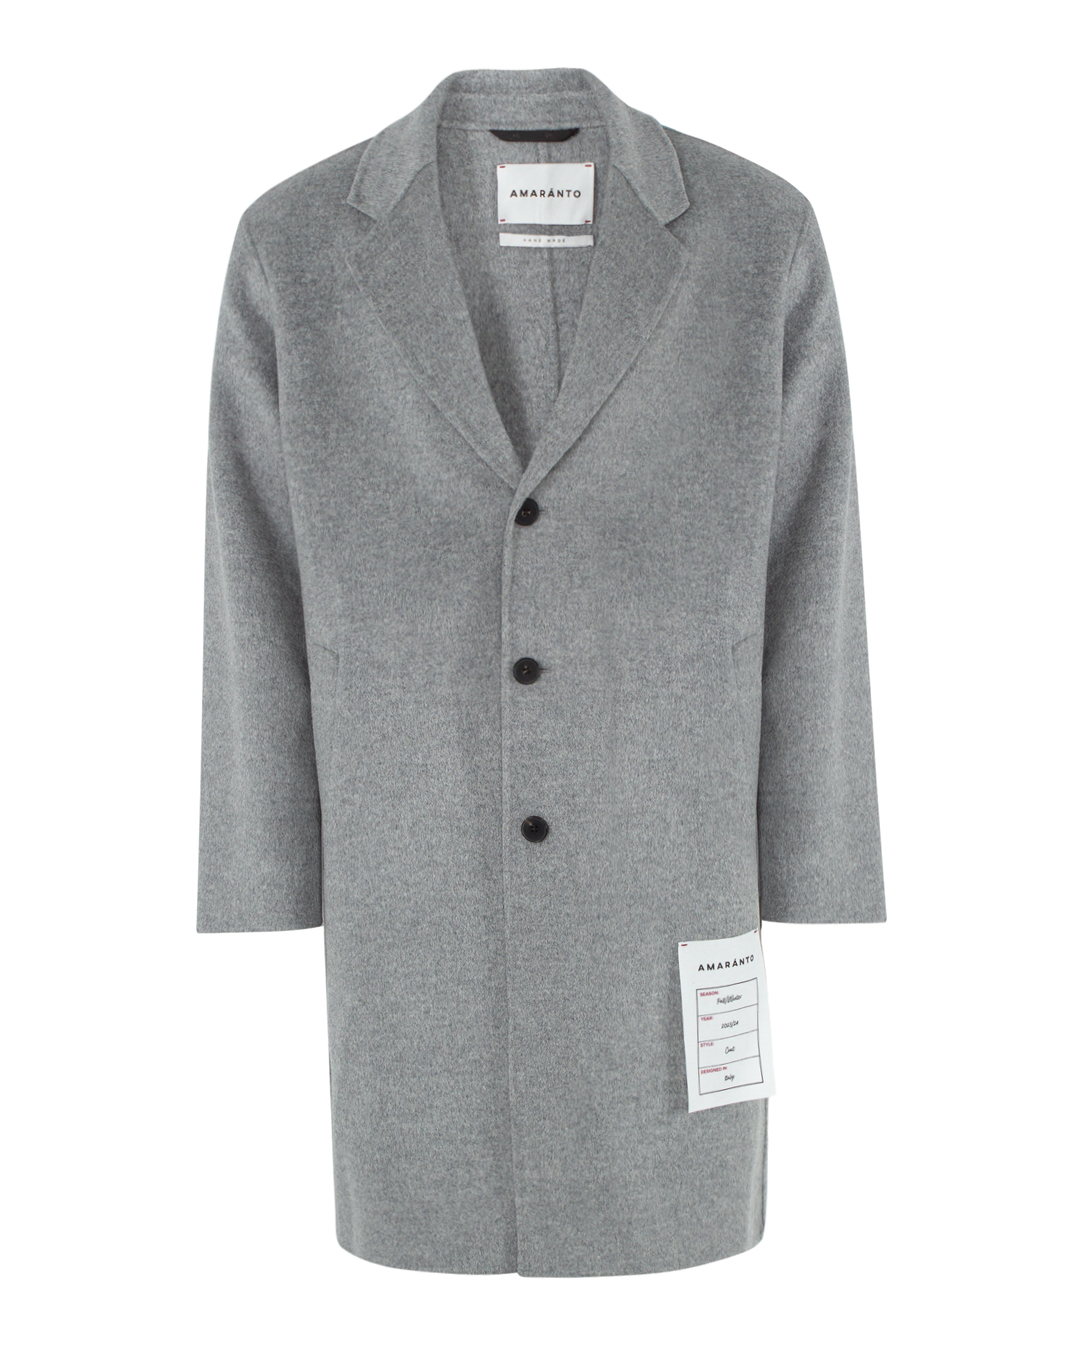 пальто AMARANTO B6R0004 серый 54, размер 54